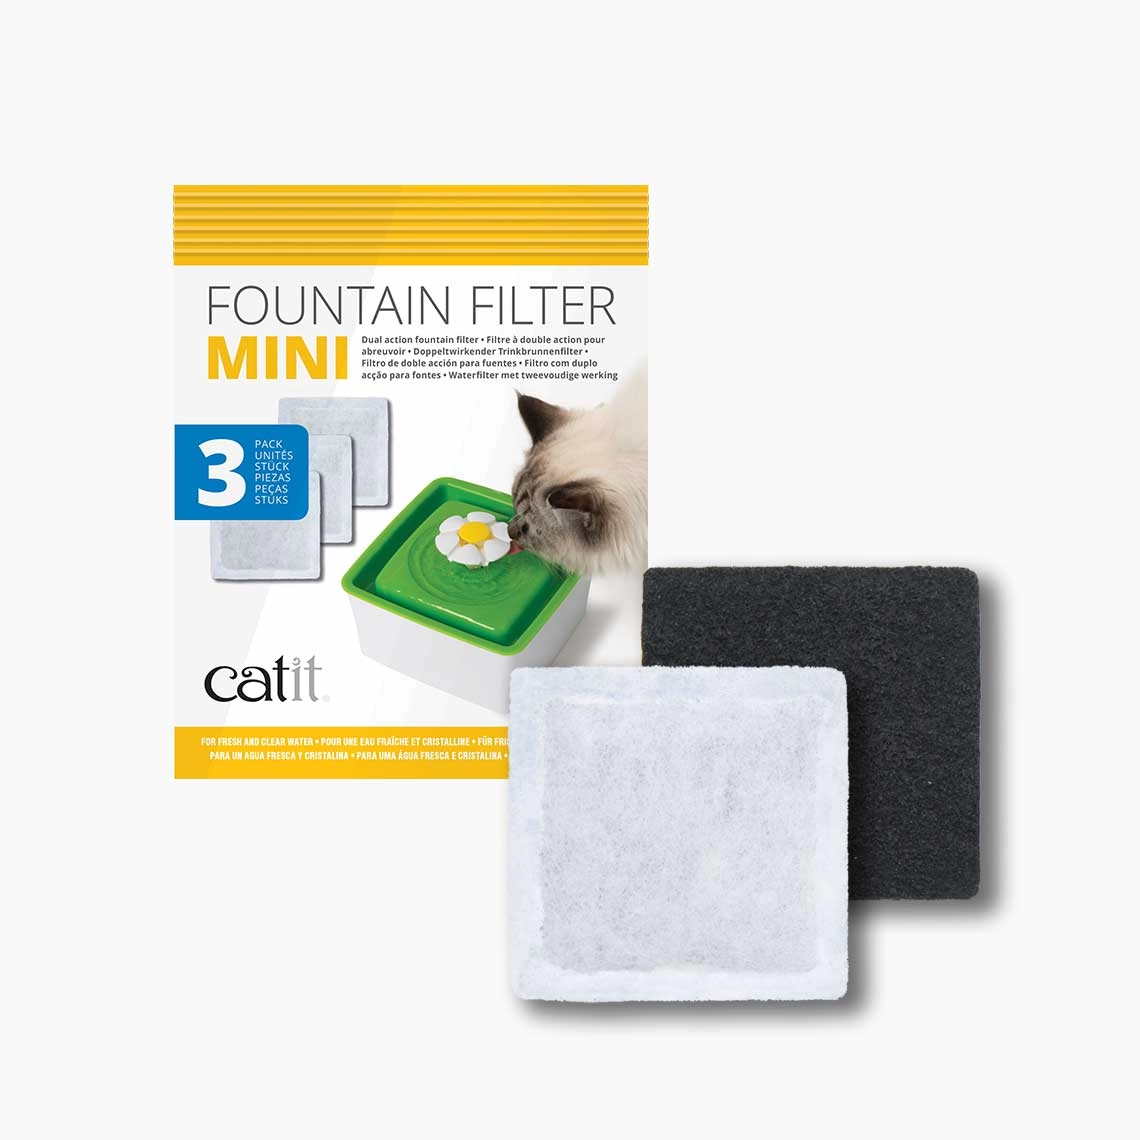 Catit - Catit Mini Fountain Filter - 3 Pack